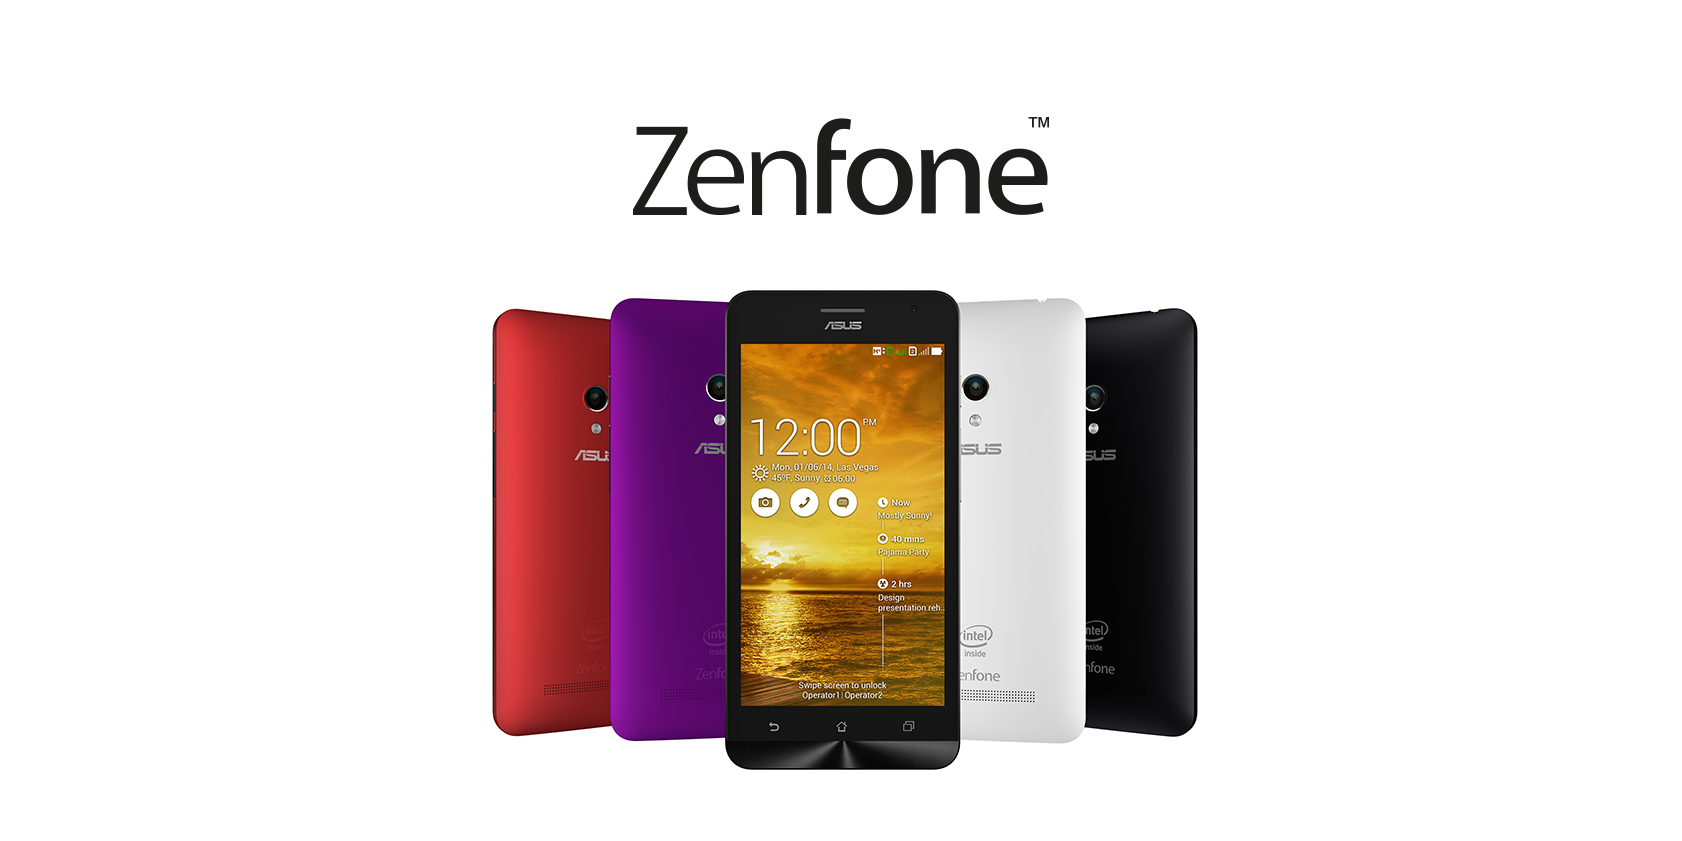 หรือกระแส ASUS ZenFone มีผลต่อสมาร์ทโฟนแบรนด์ดังบ้านเรา?